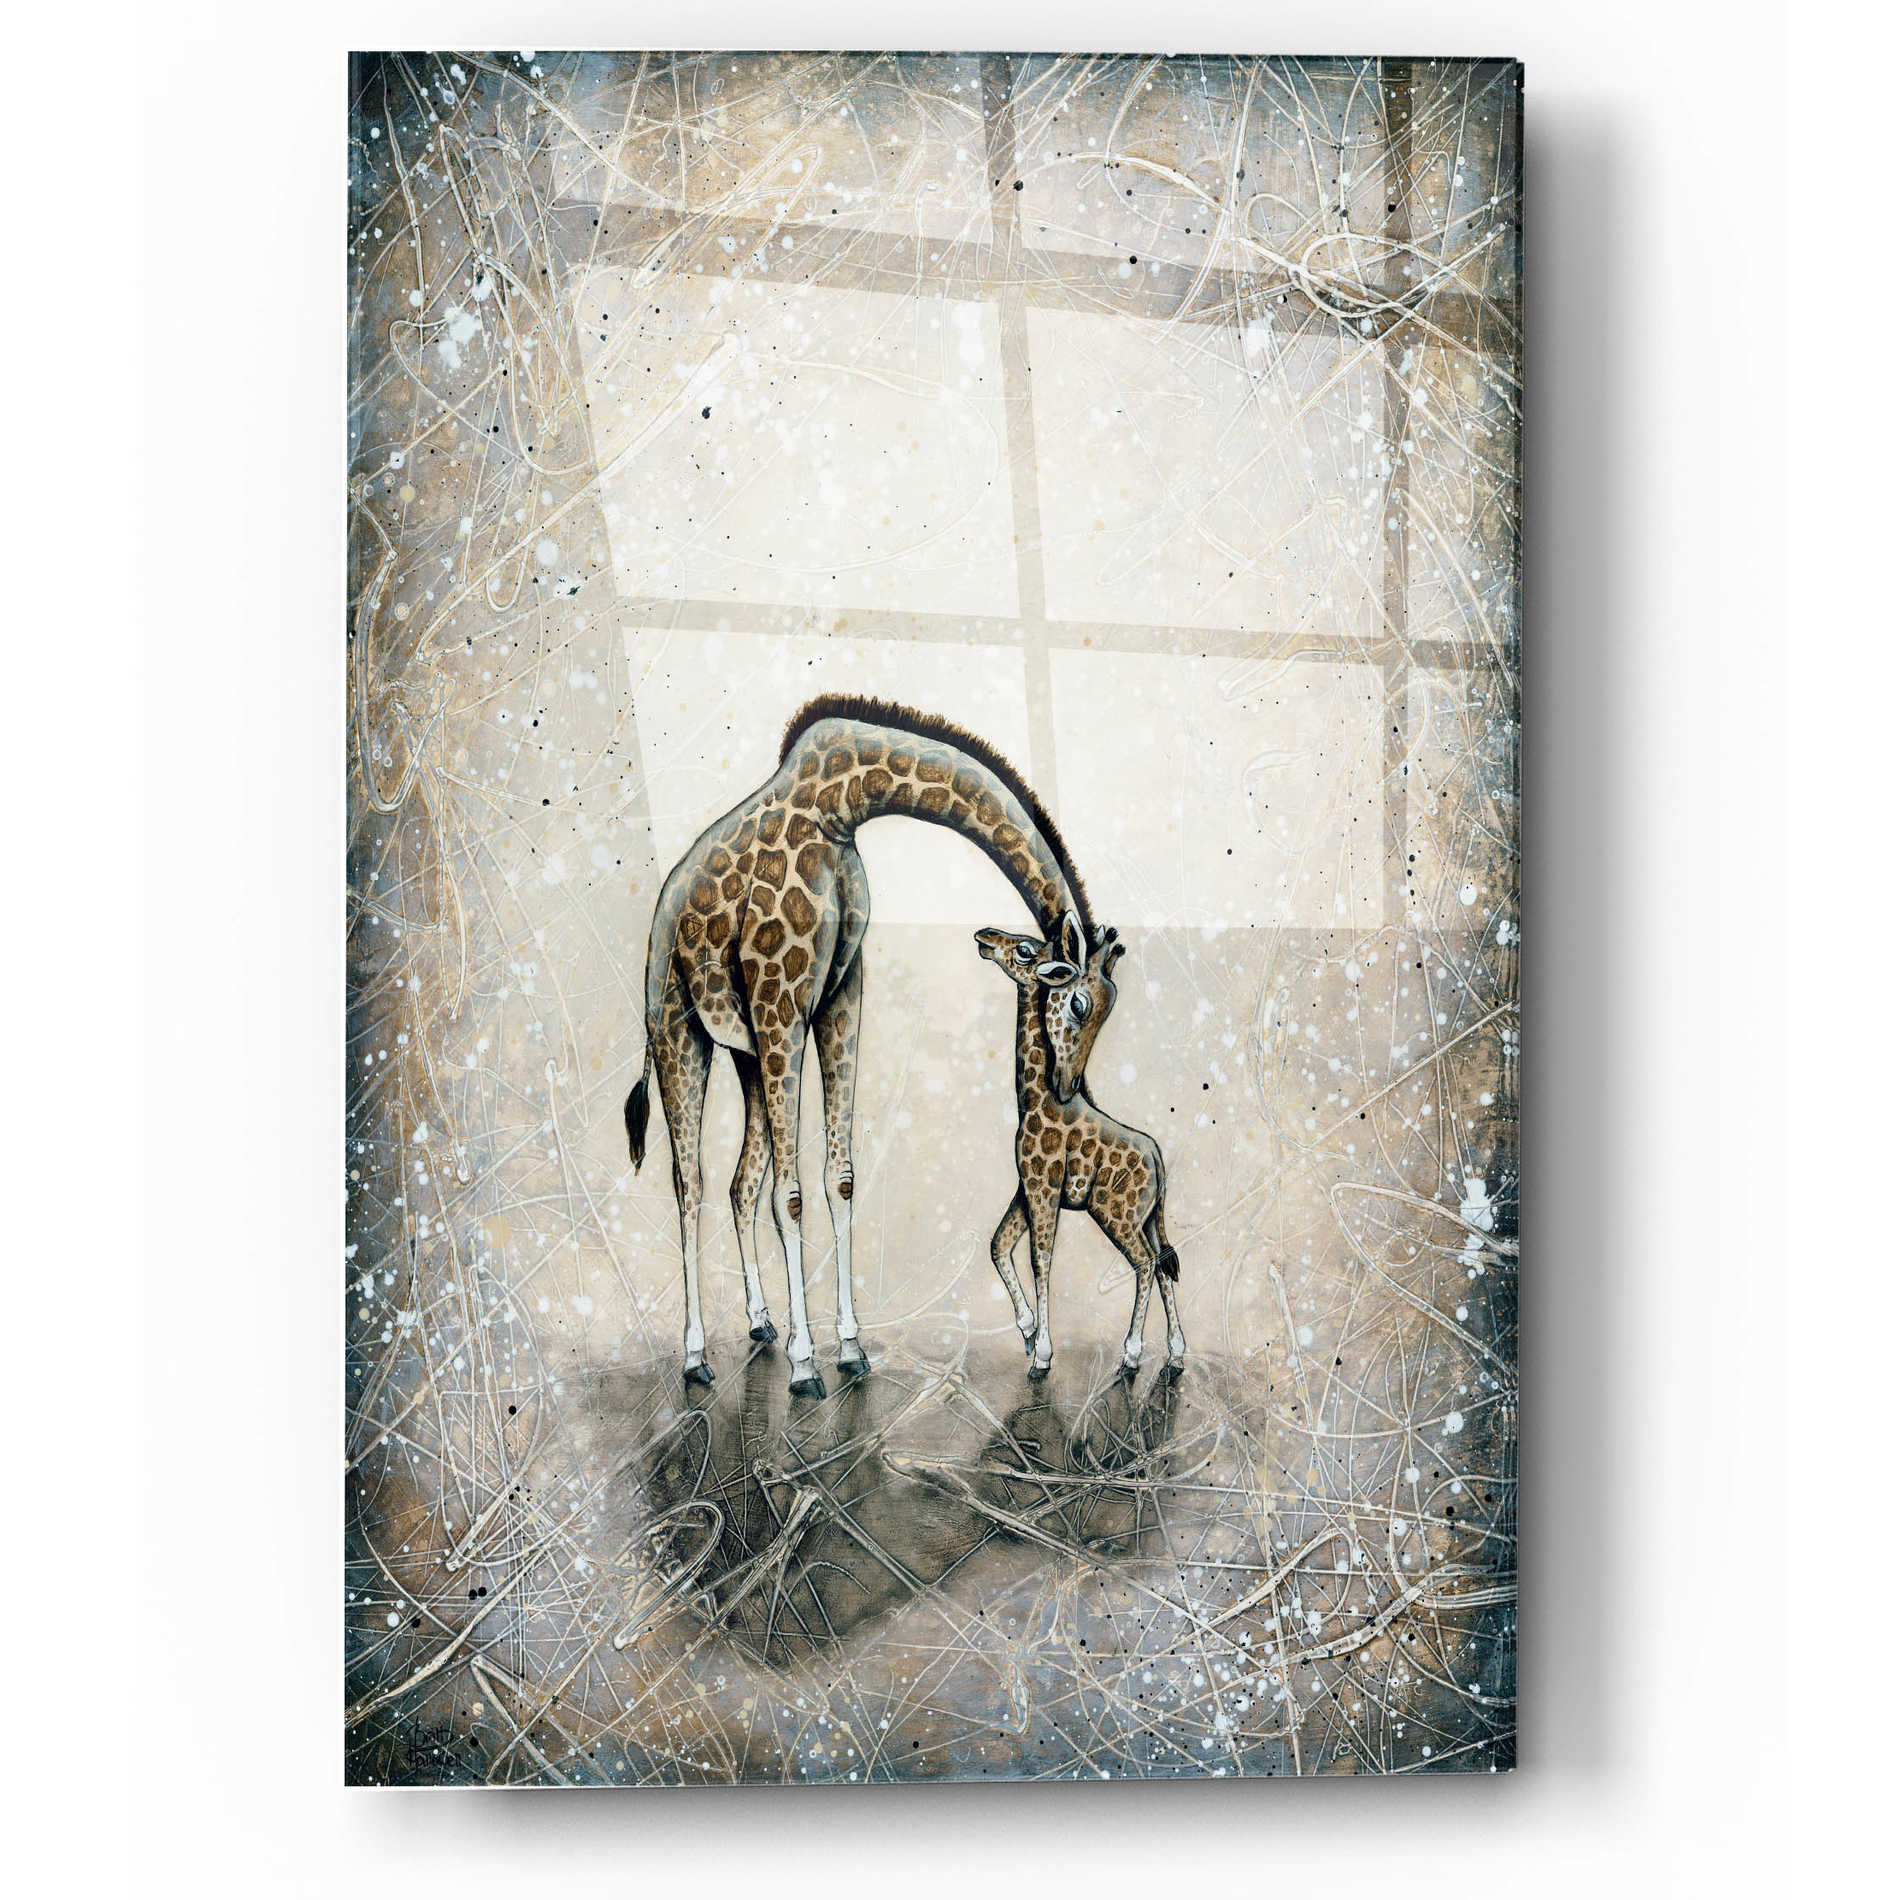 Epic Art 'My Love for You - Giraffes' by Britt Hallowell, Acrylic Glass Wall Art,12x16